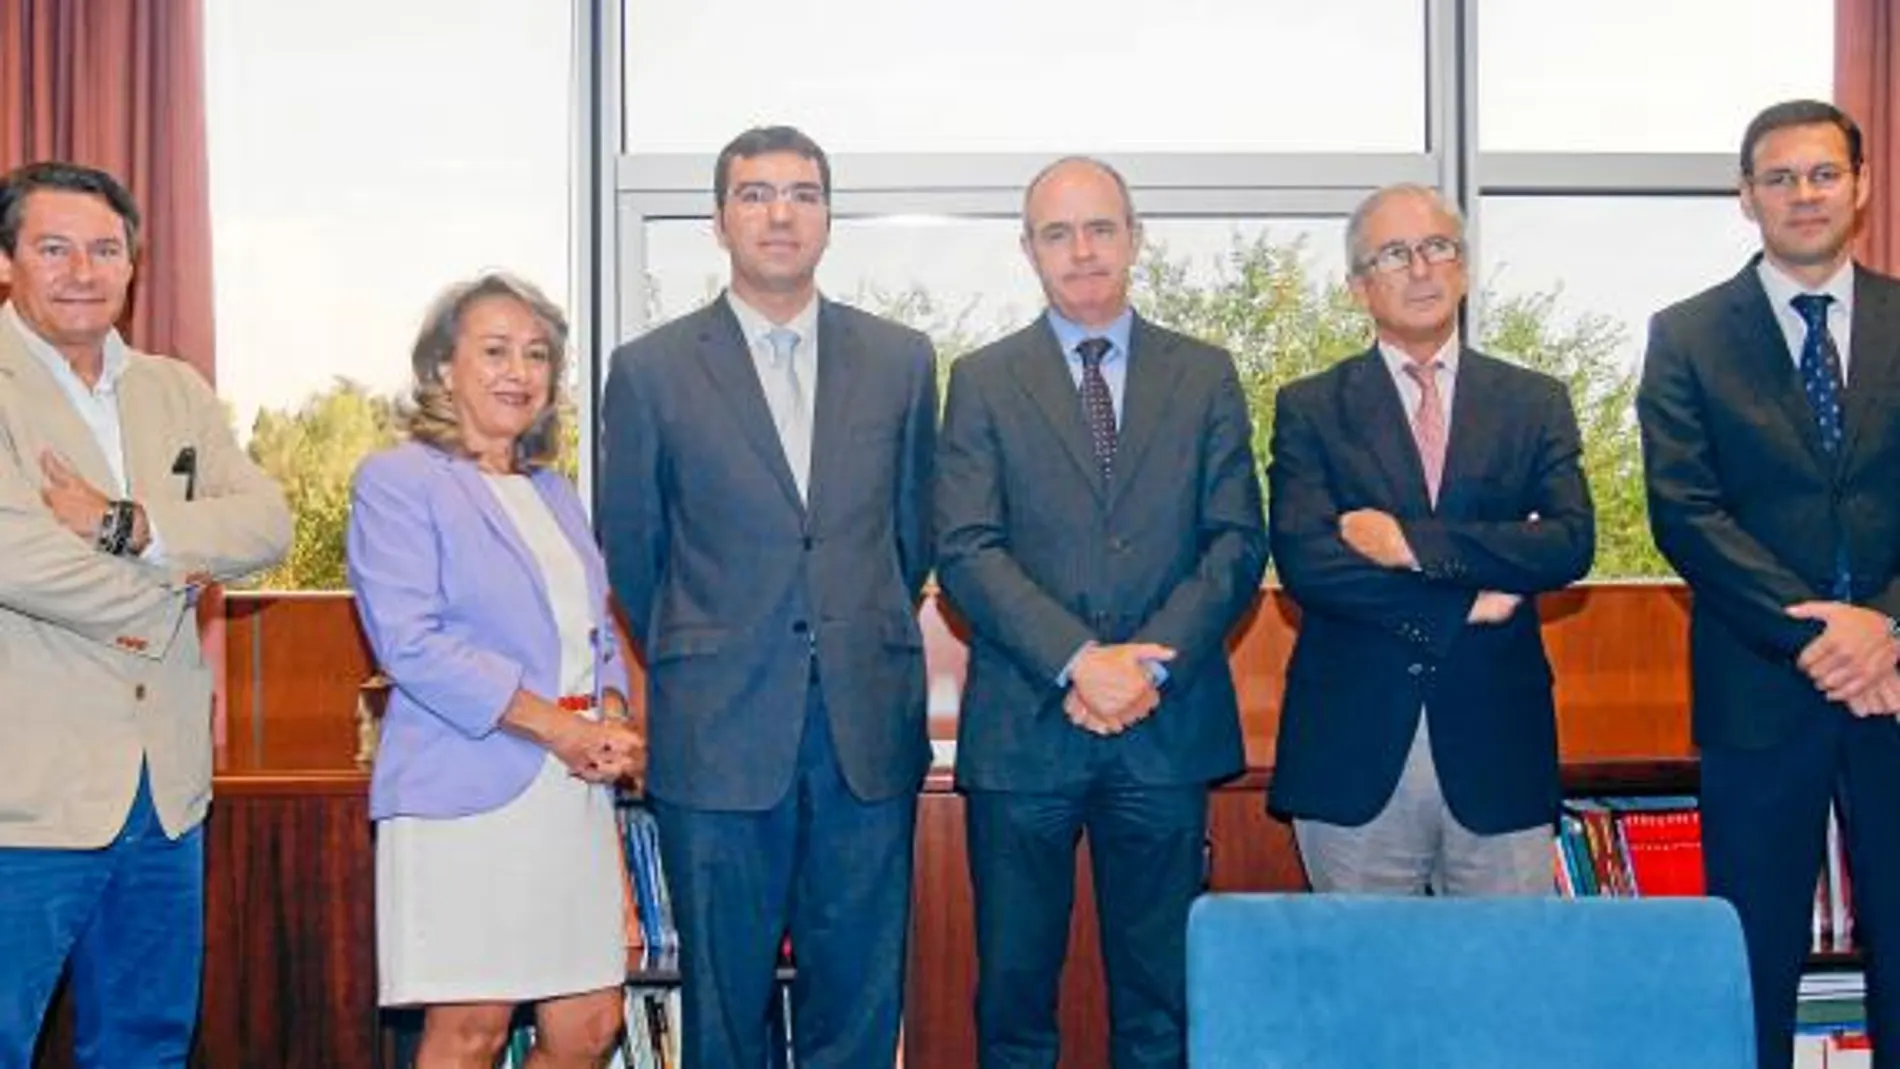 De izquierda a derecha: Javier Arias (Infiniti), Pilar Guridi (General Motors), Fernando Moreno (Bosch), Carlos Bergera (Iberdrola), Carlos de Miguel (LA RAZÓN) y José Ramón Freire (Gas Natural Fenosa).